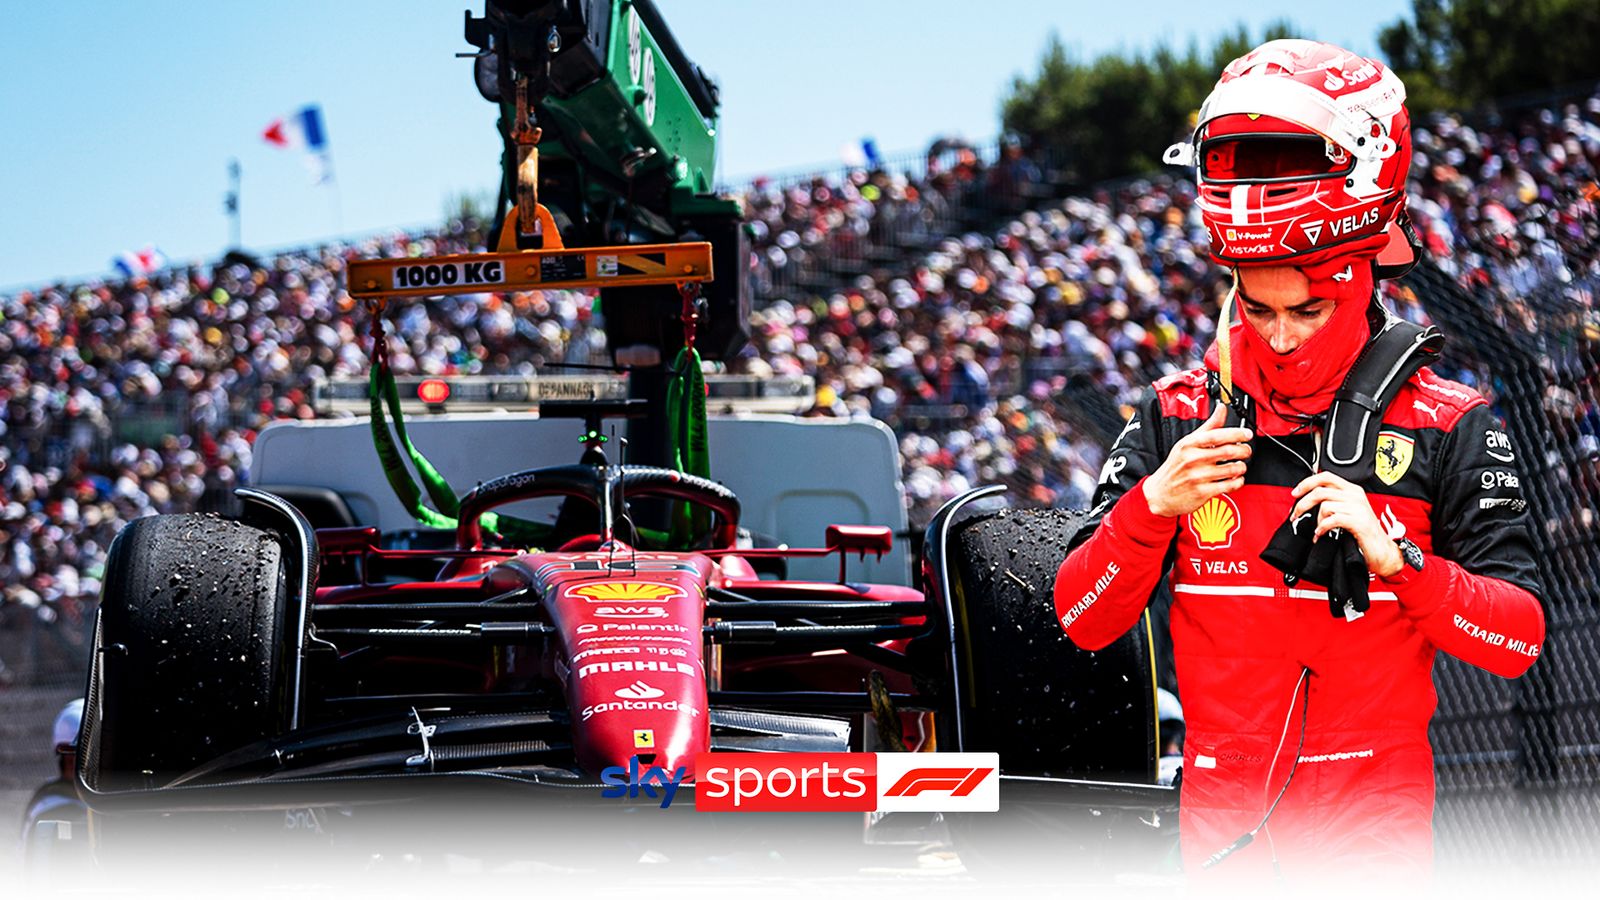 Charles Leclerc ennyire hibás?  A Ferrari visszautasítja az „igazságtalan” felvetést, a Magyar Nagydíj válaszára utal